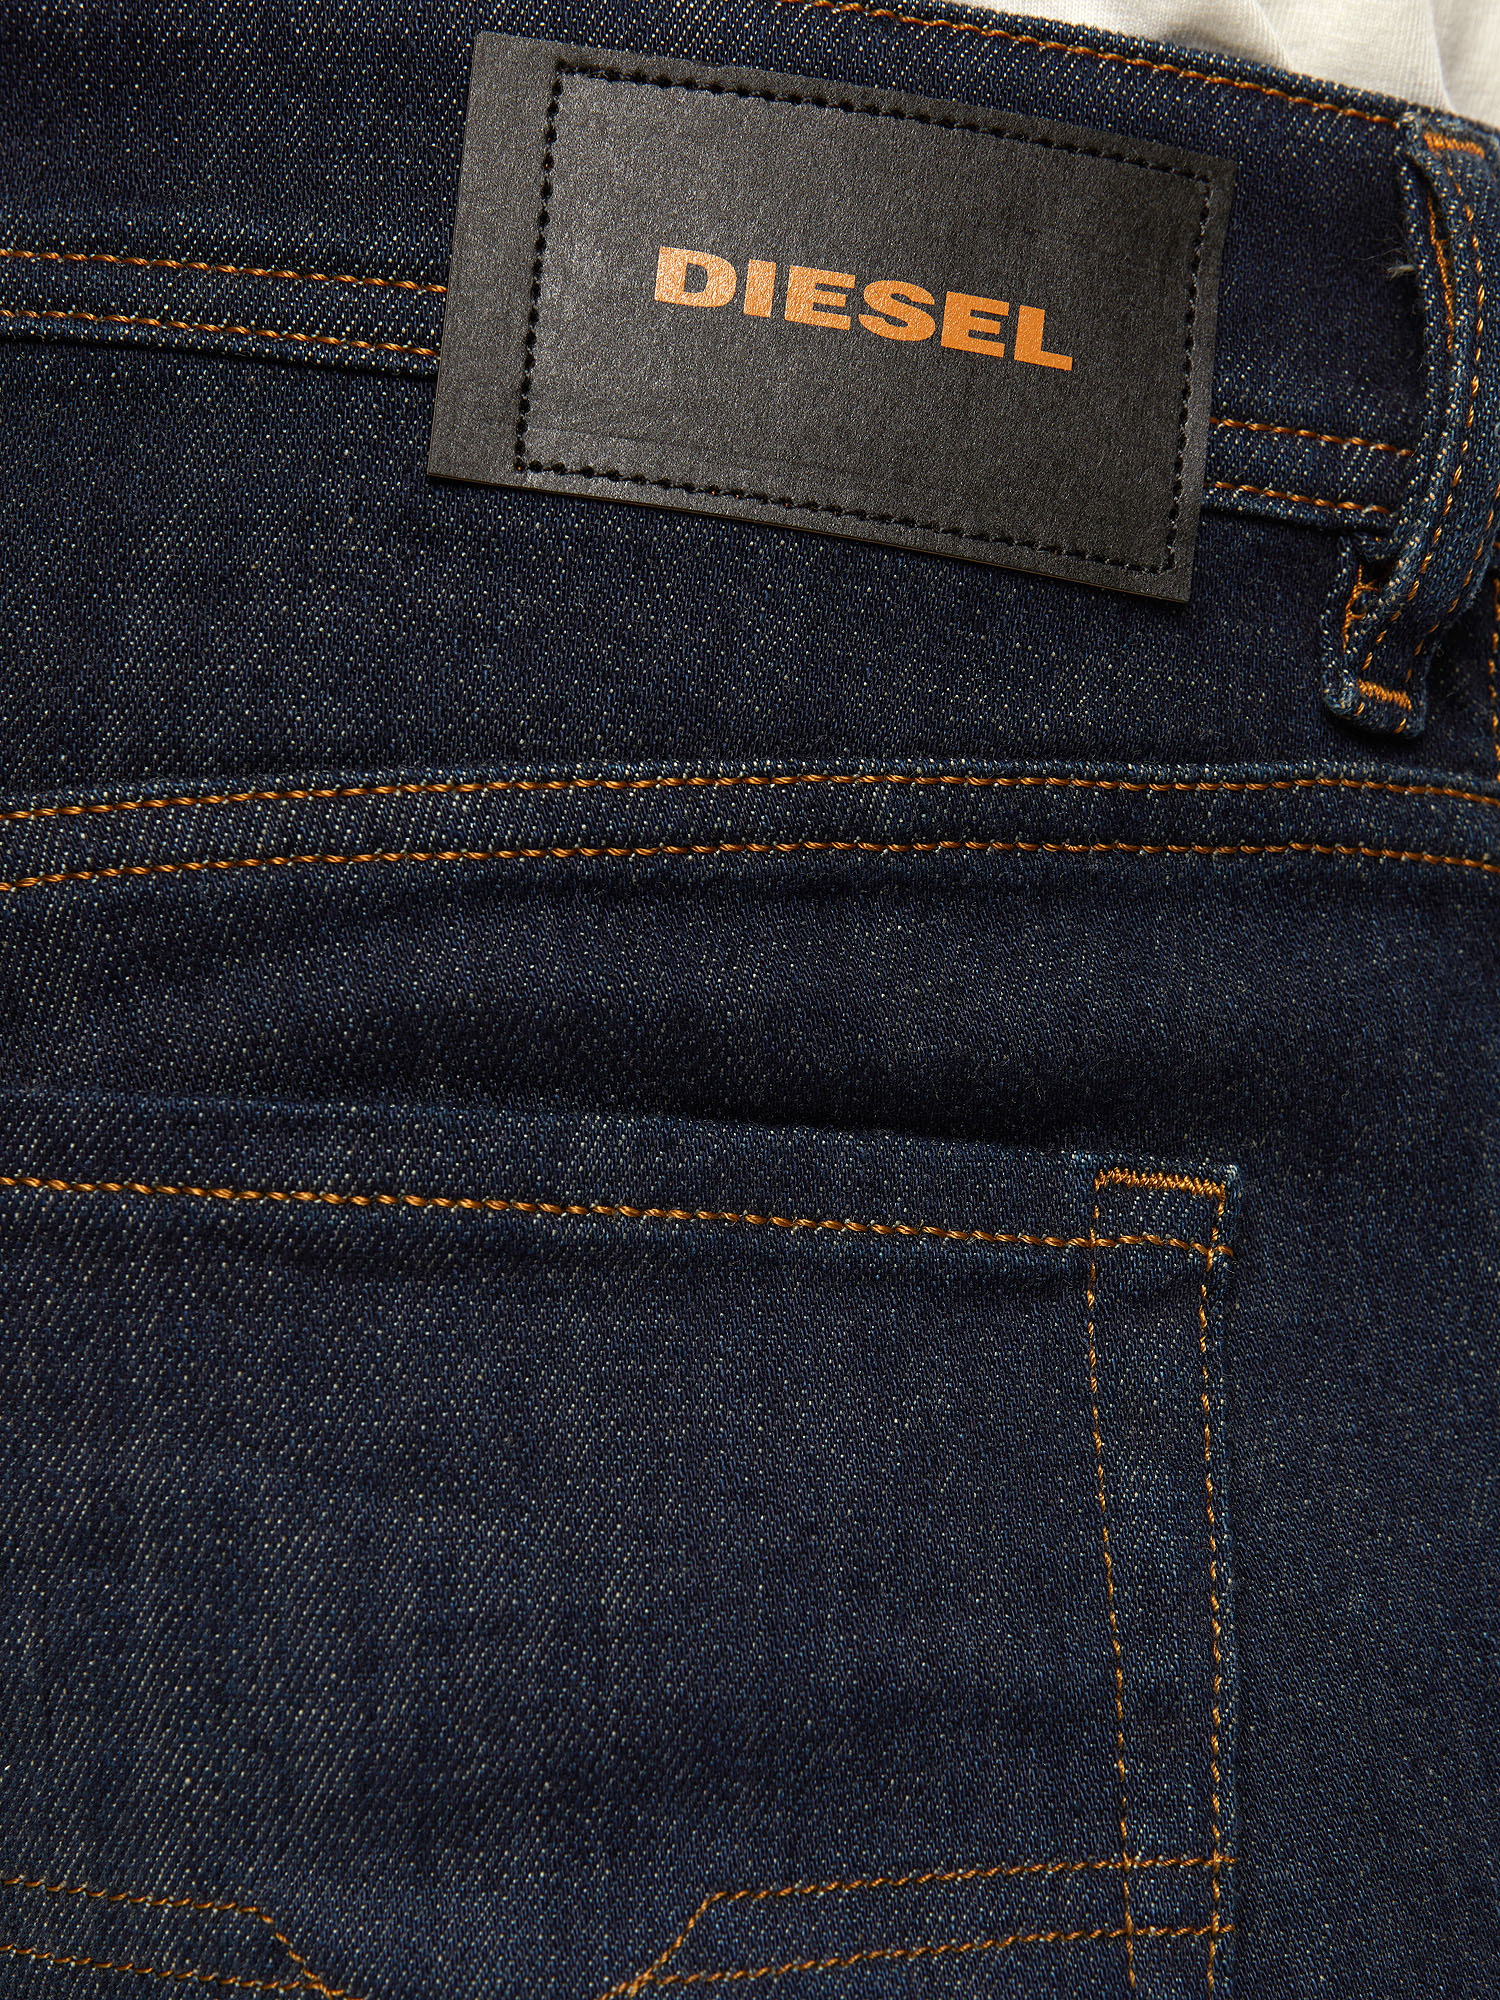 Diesel - Sleenker 009DI Skinny Jeans,  - Image 3